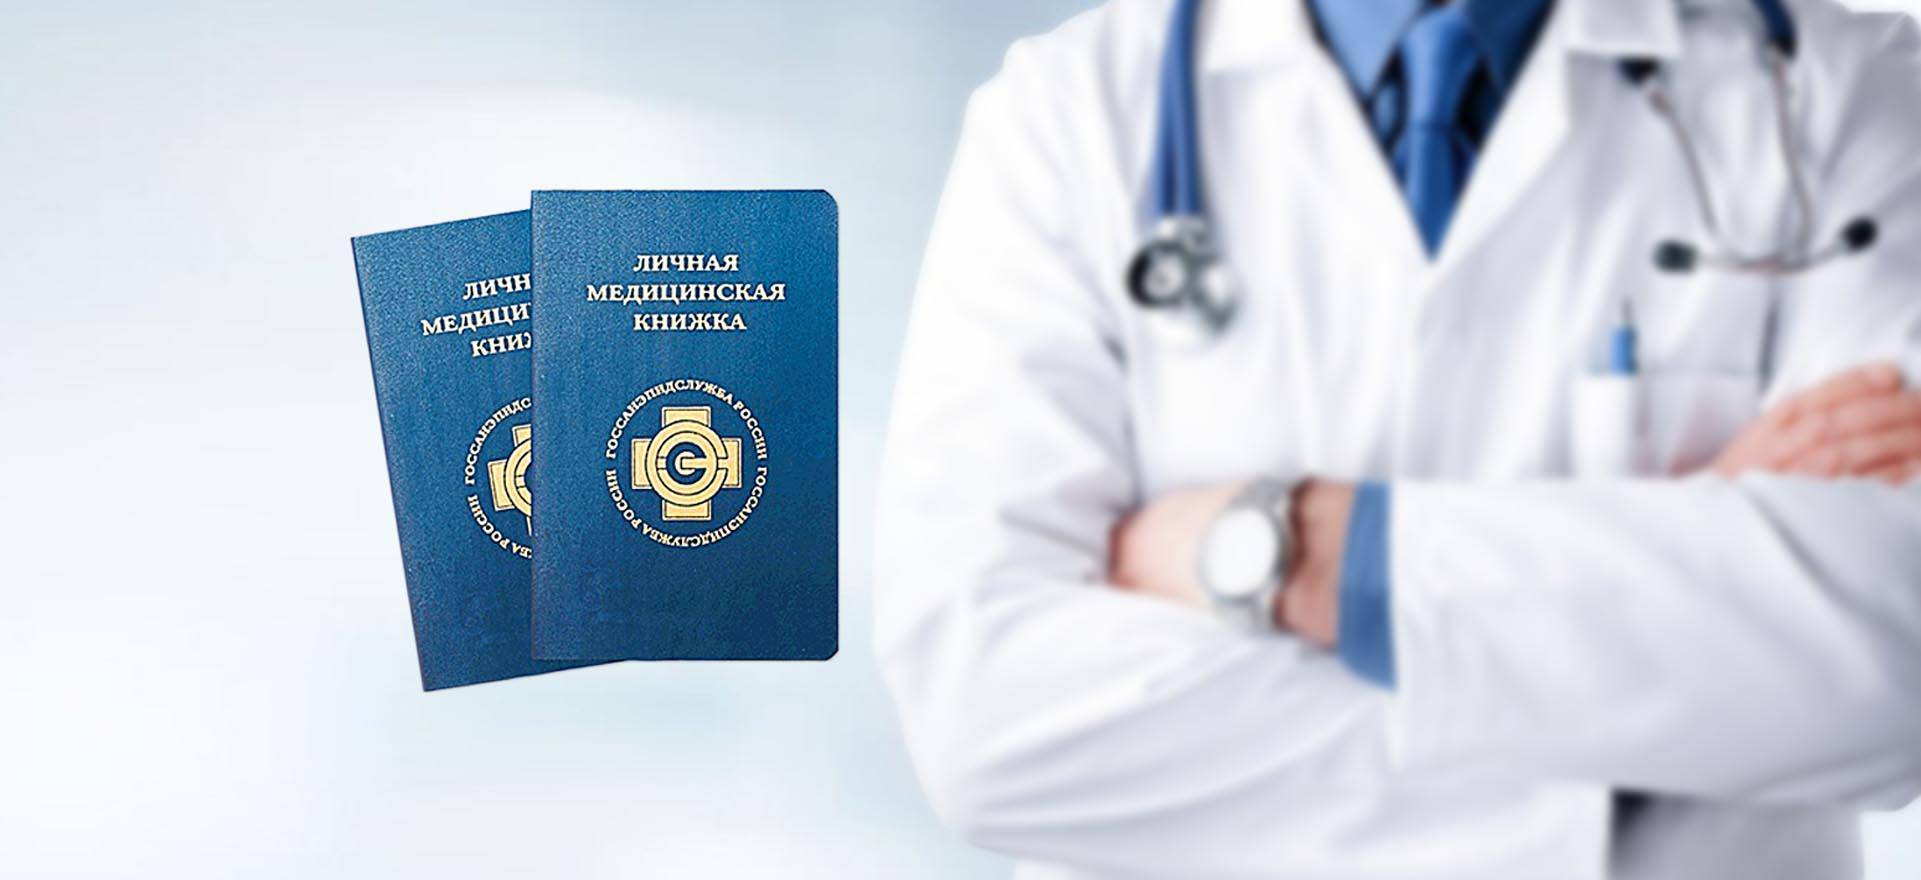 Как оформить медицинскую книжку для работы – порядок получения, список специальностей и документов